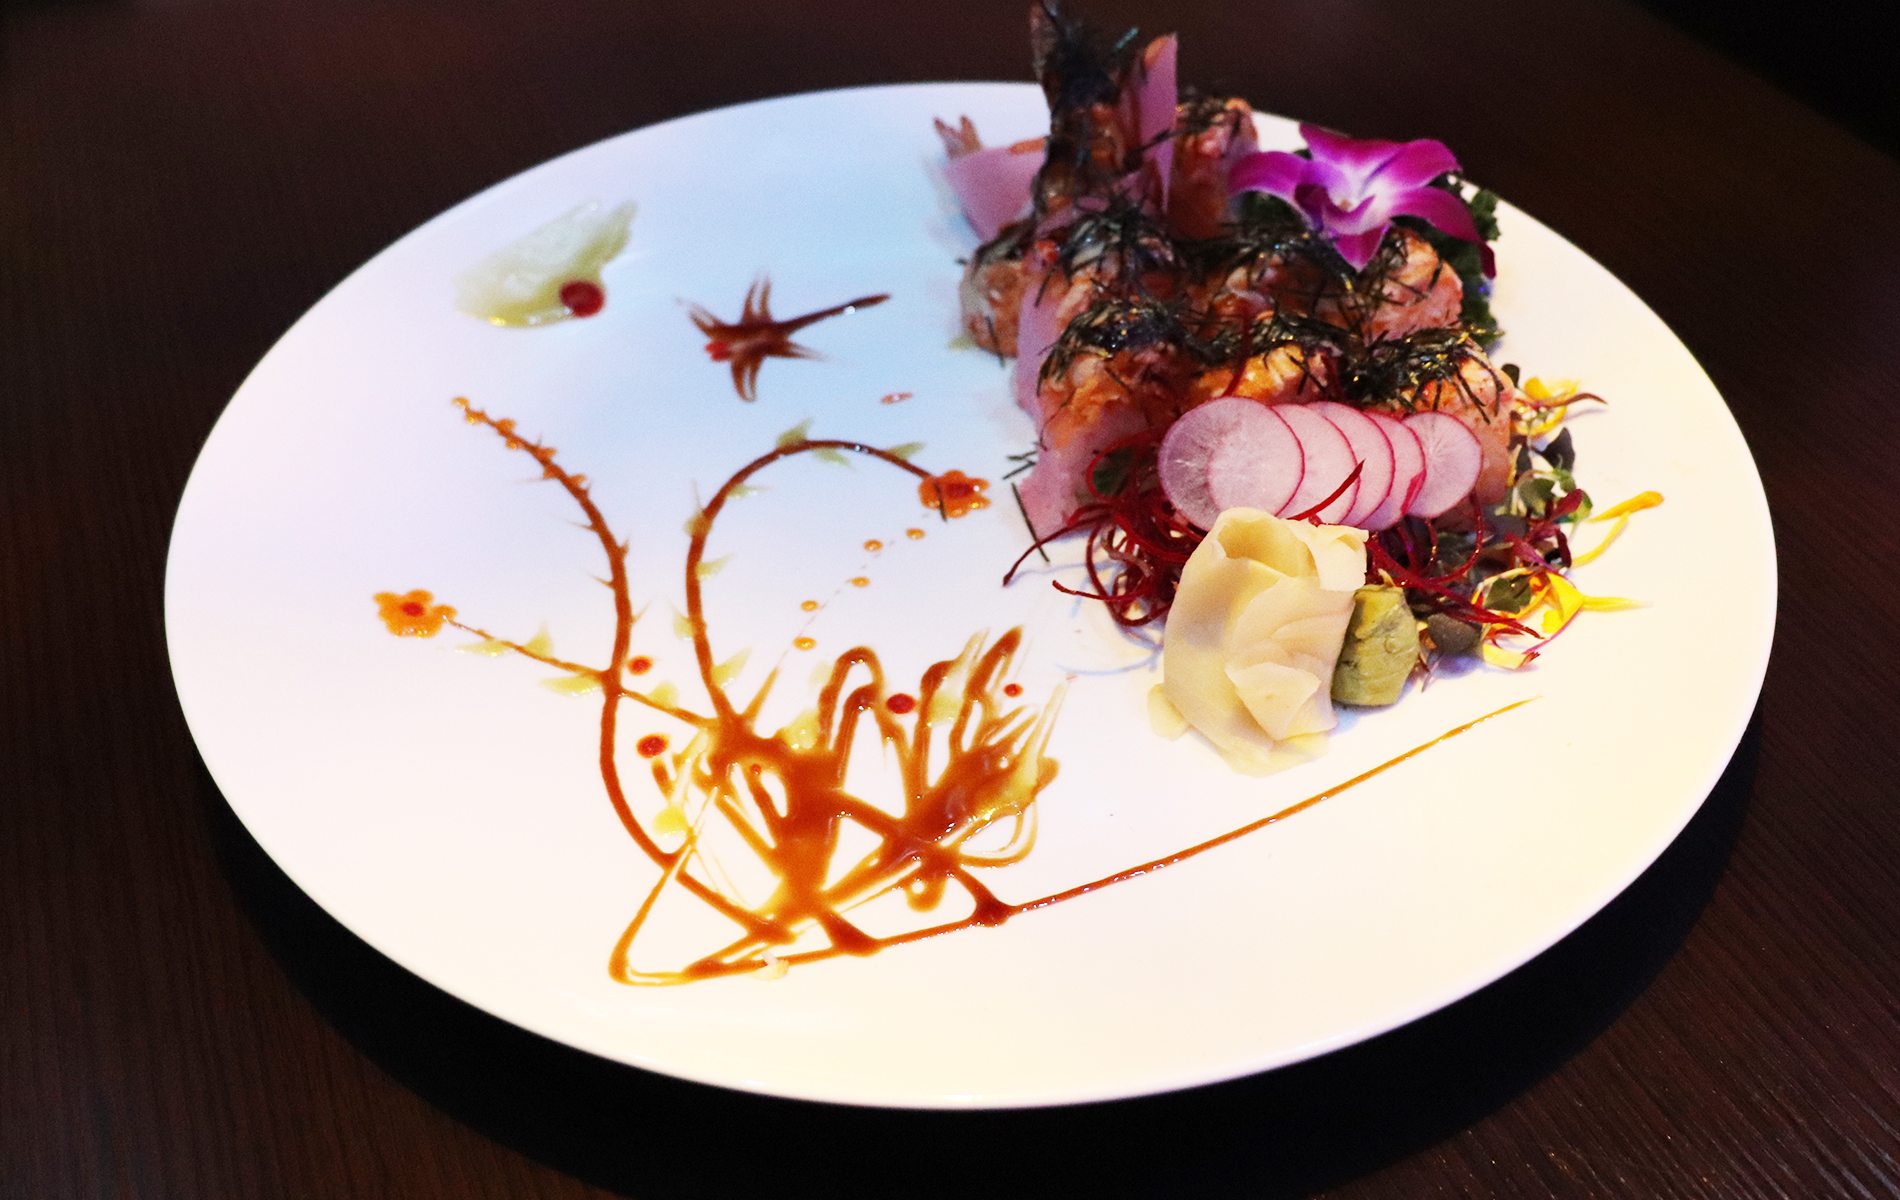 About Us - Sake sushi hibachi steakhouse, Sushi & Japanese Steakhouse - The Colony TX